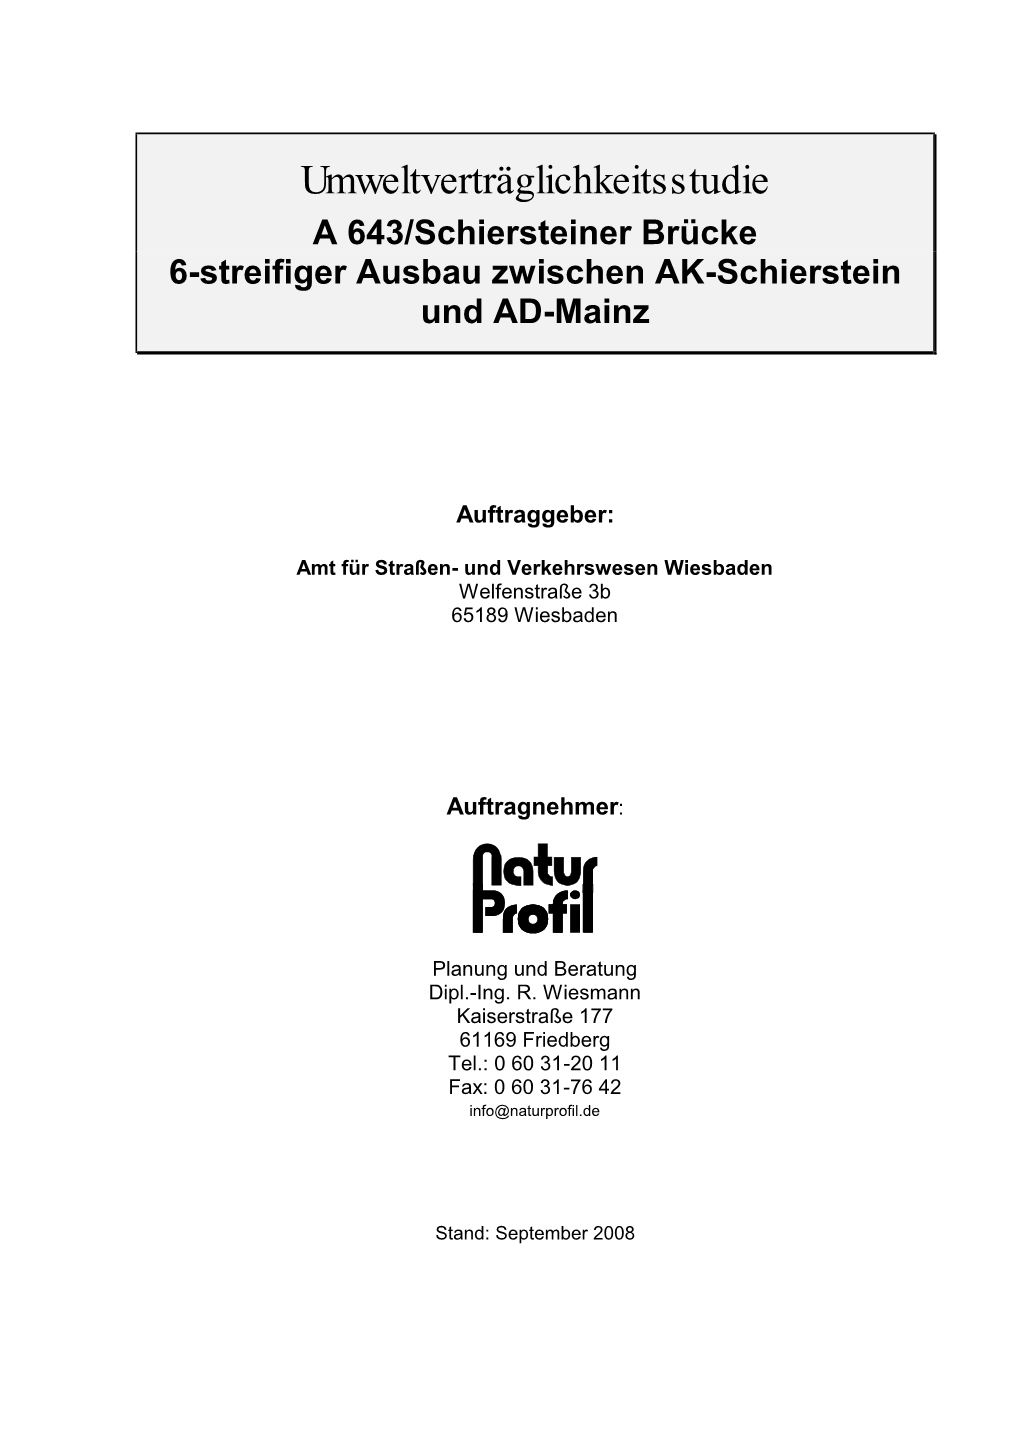 Umweltverträglichkeitsstudie a 643/Schiersteiner Brücke 6-Streifiger Ausbau Zwischen AK-Schierstein Und AD-Mainz